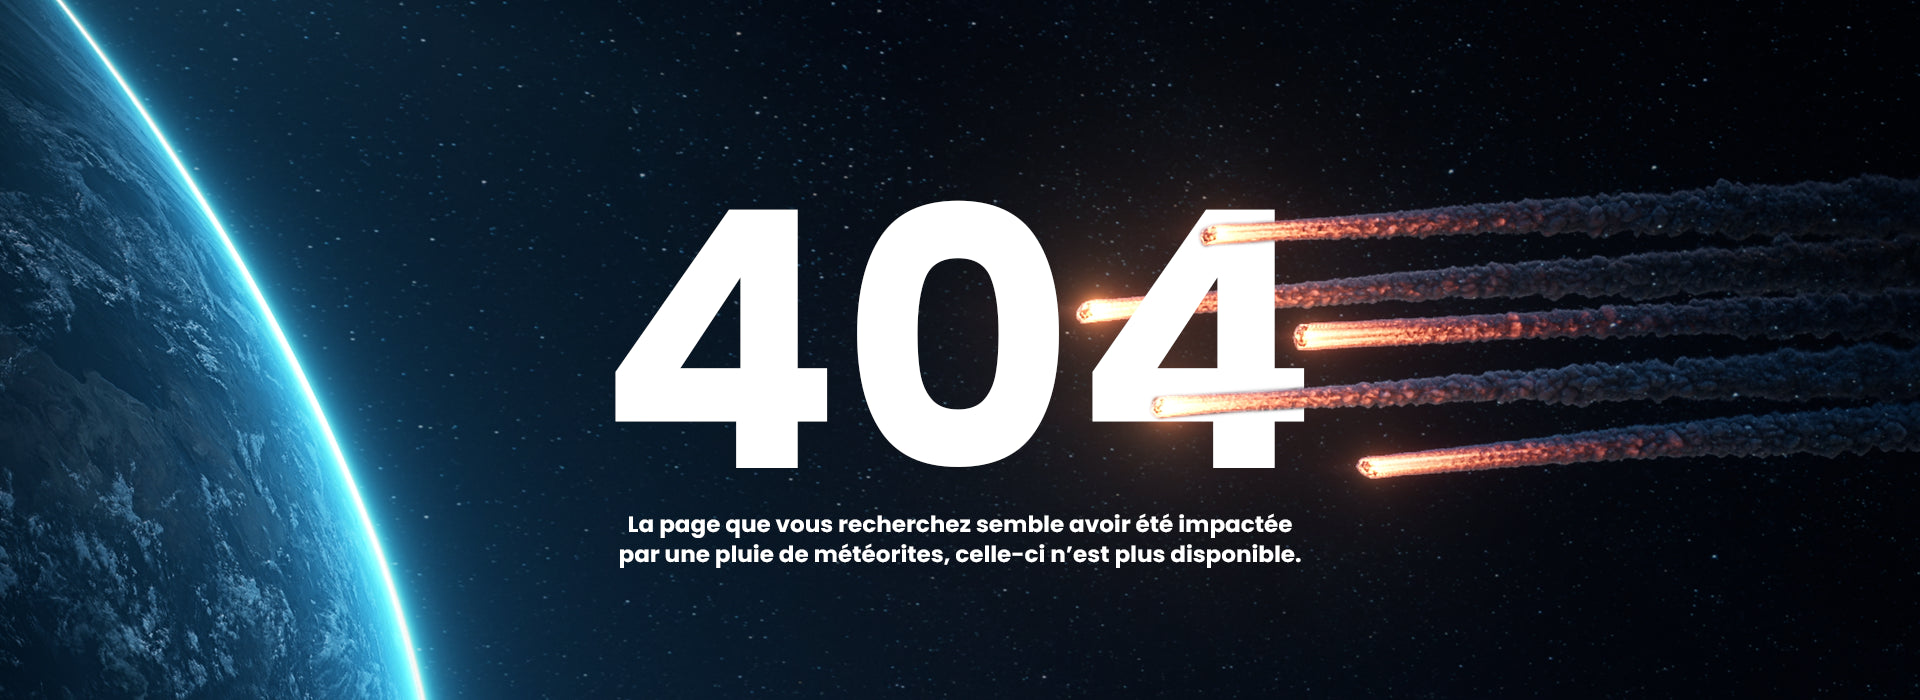 visuel erreur 404